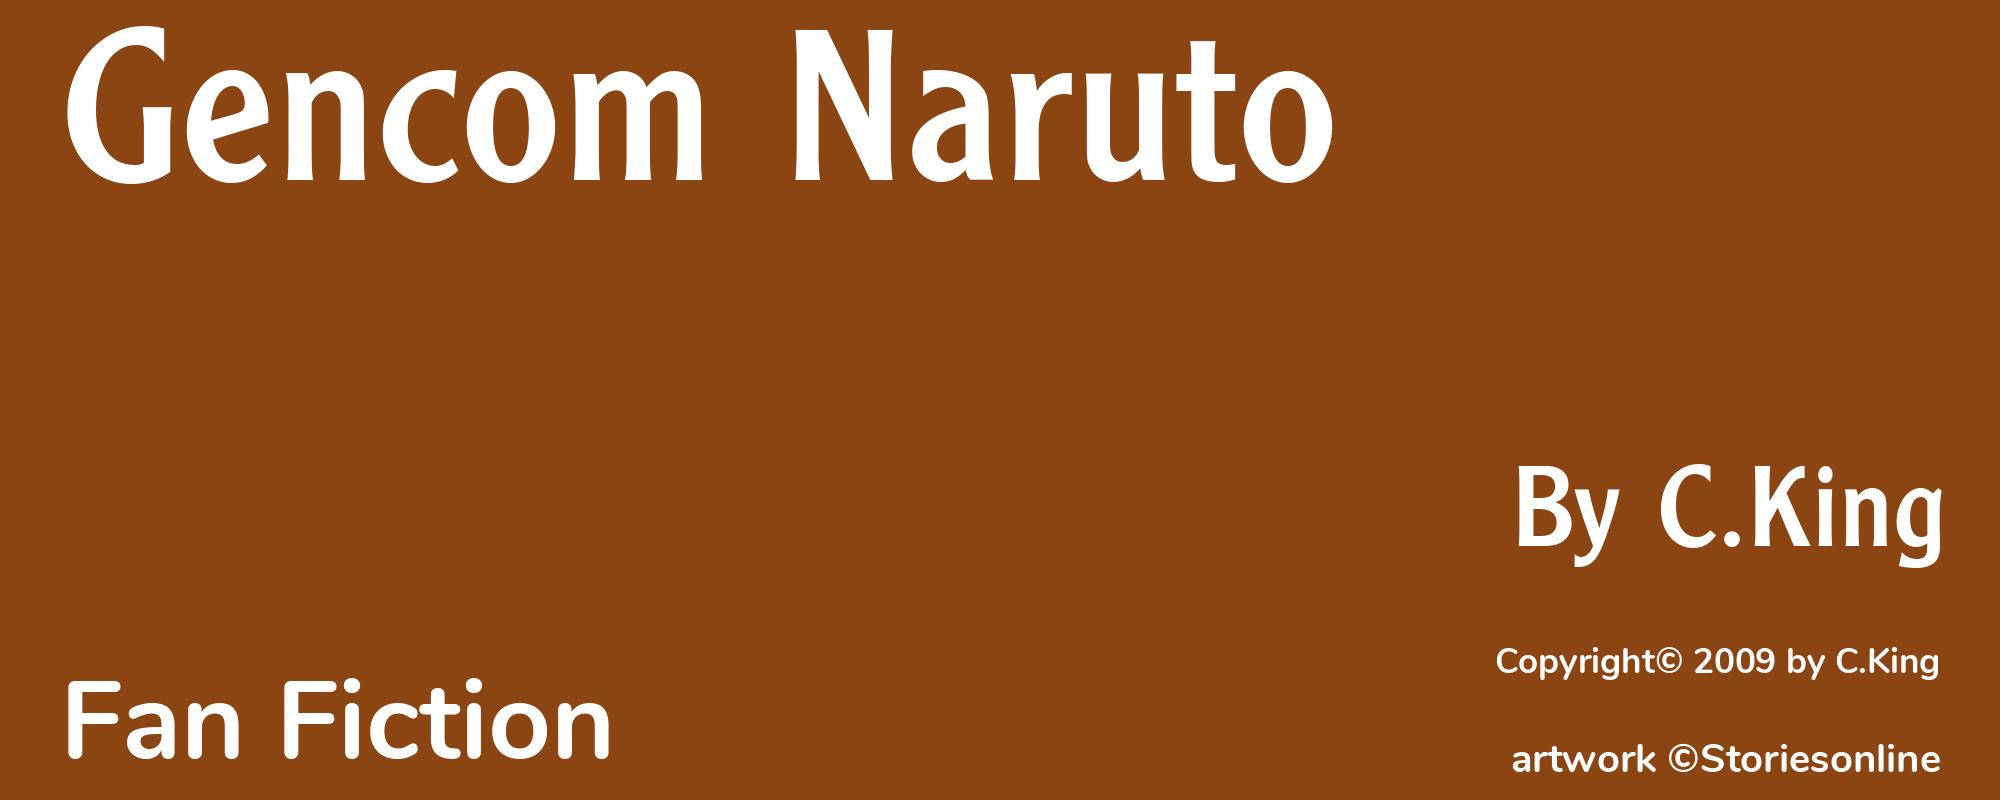 Gencom Naruto - Cover